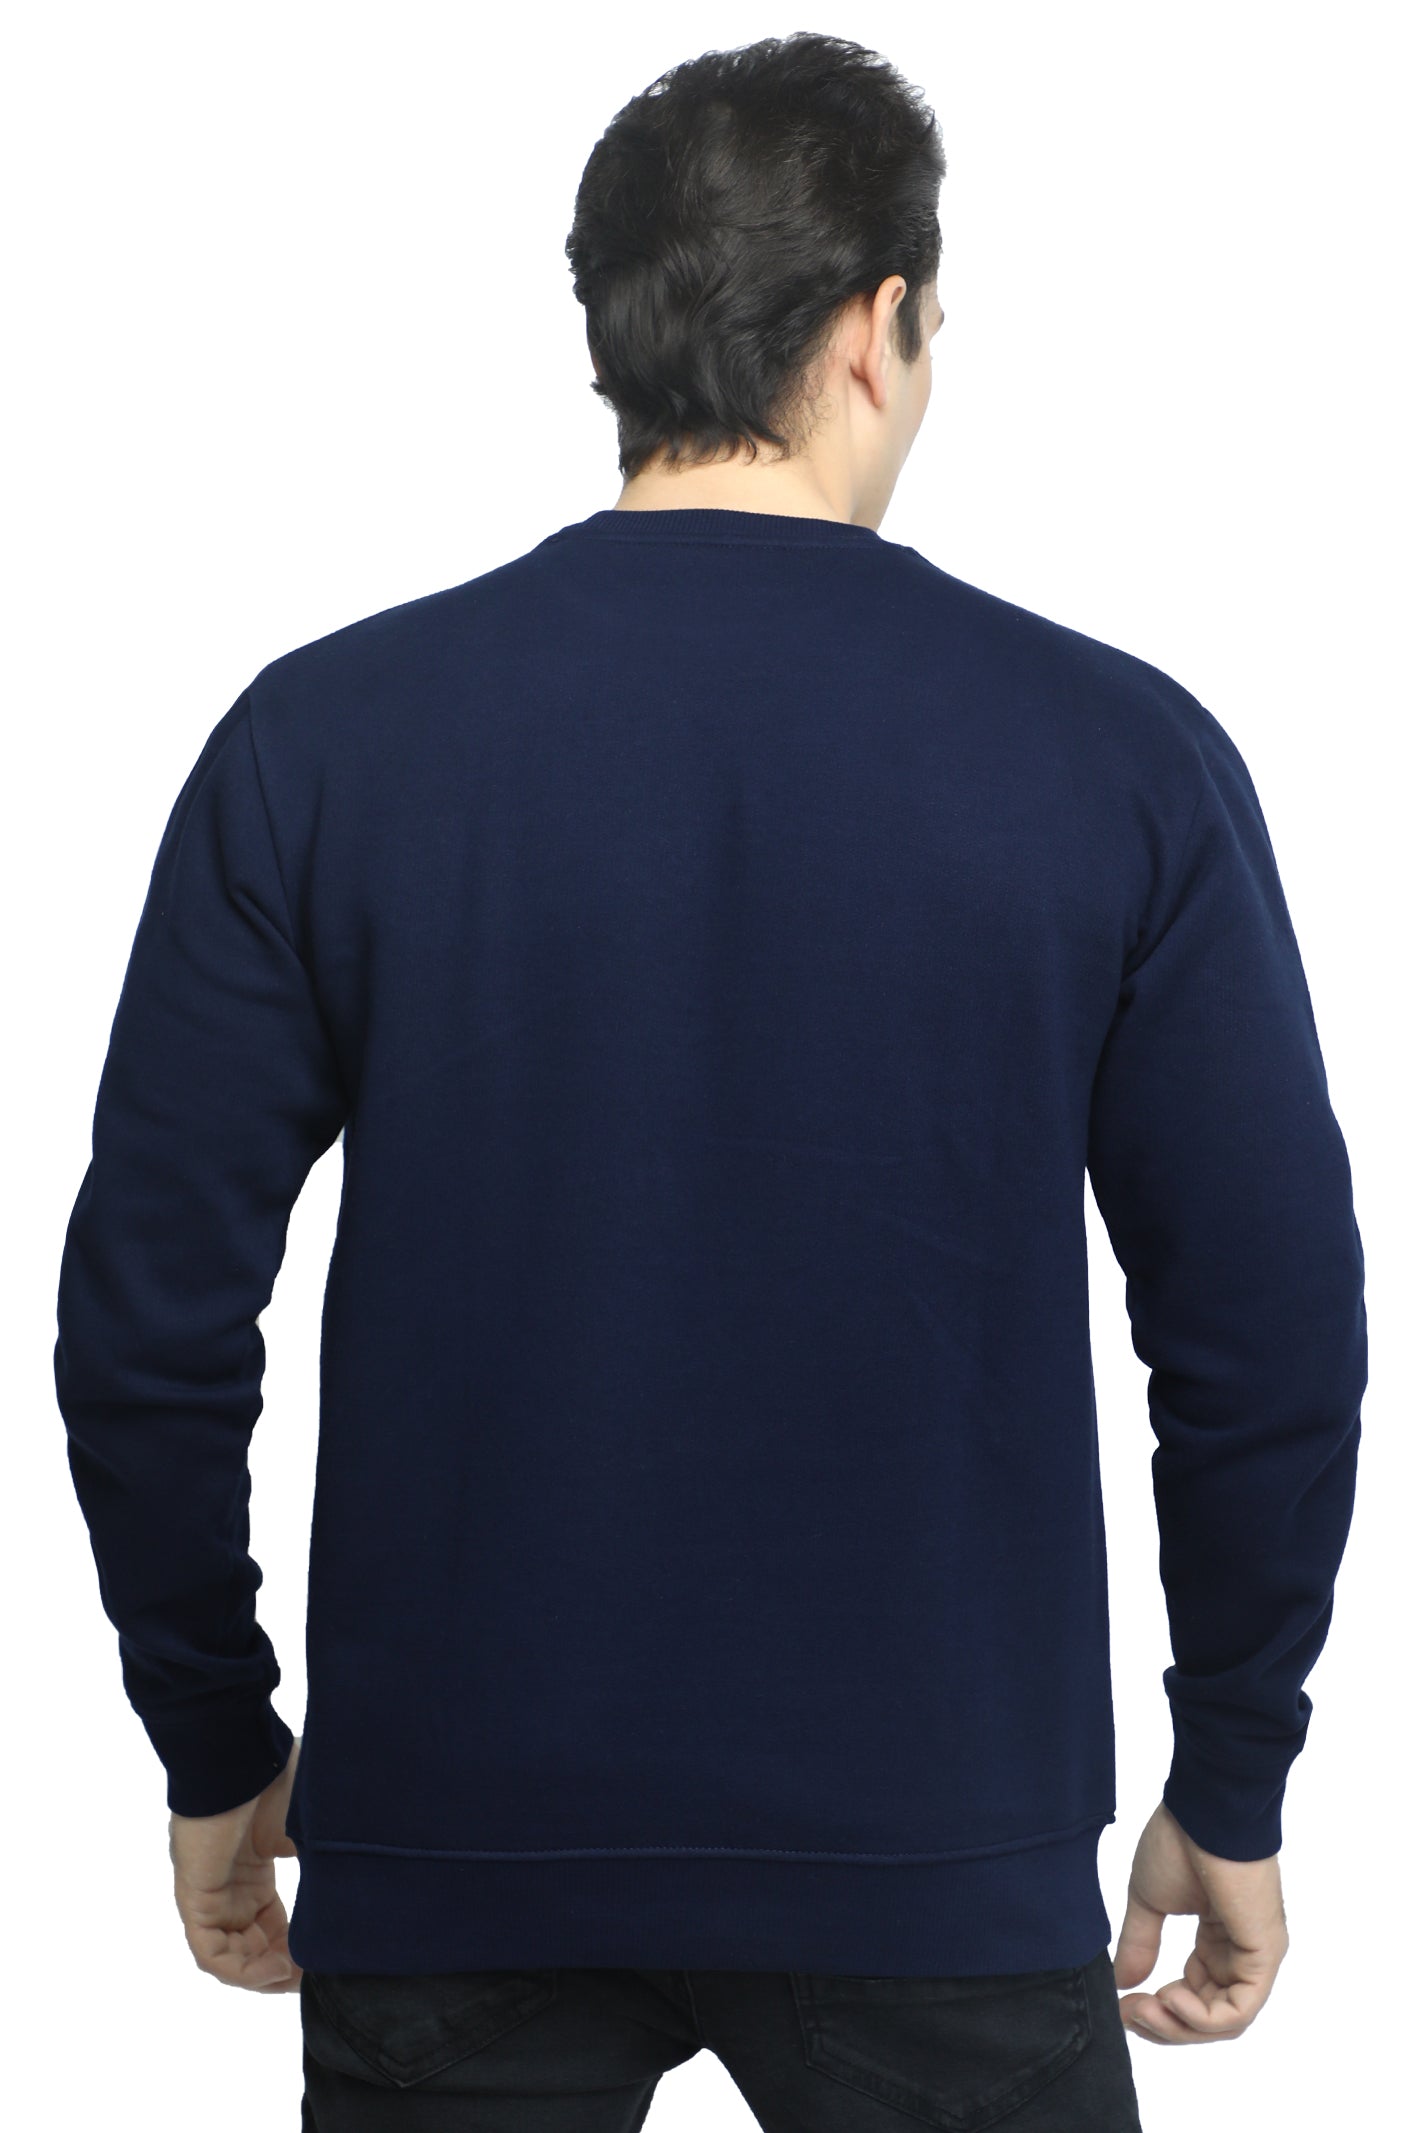 Diner's Men's Sweatshirt SKU: FA905-N-BLUE - Diners